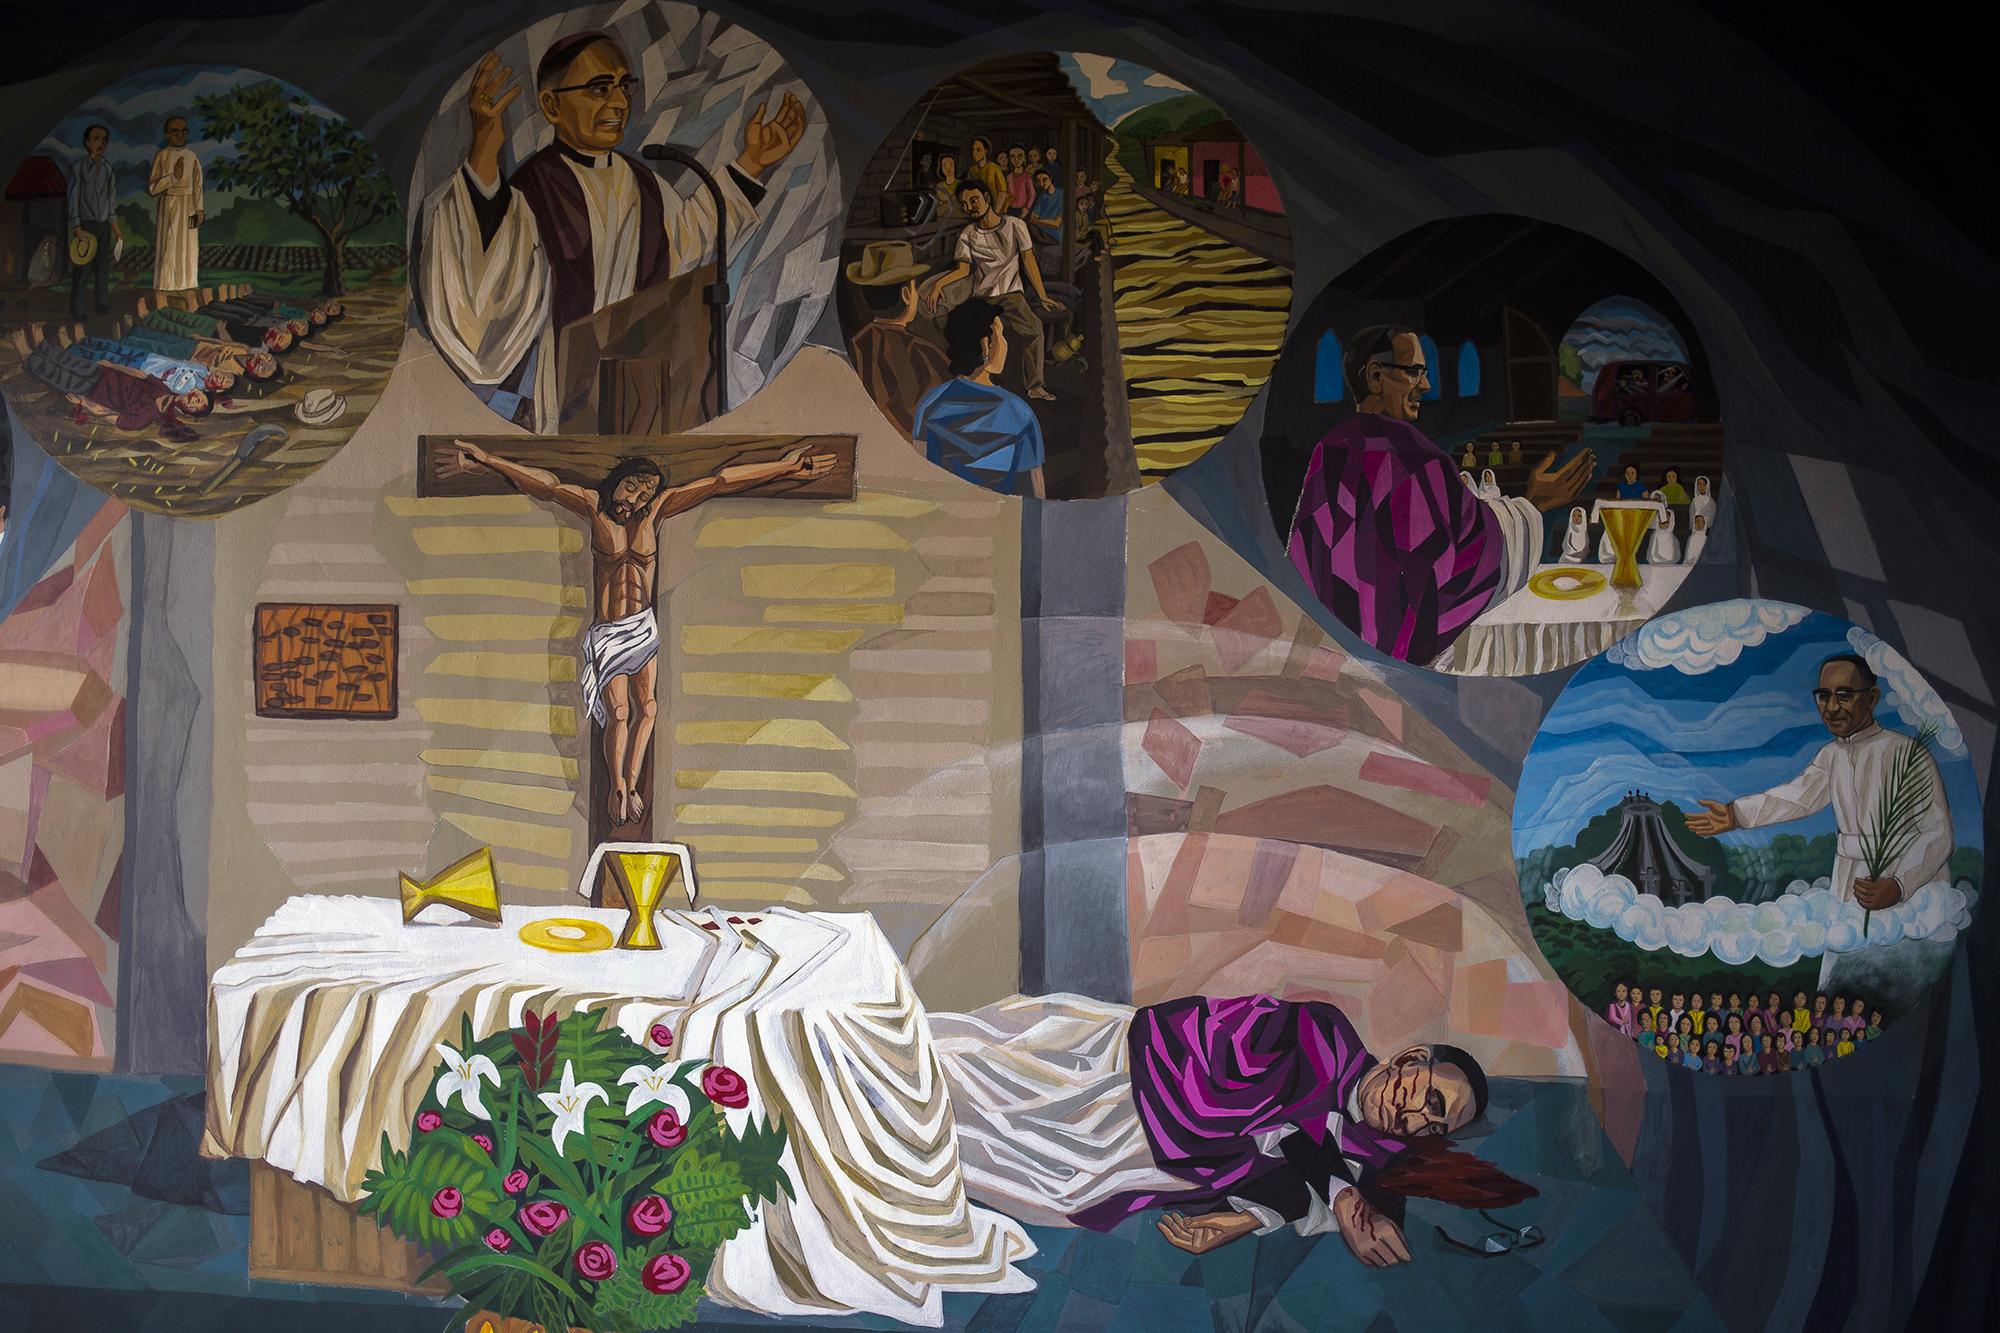 Mural realizado por el pintor ecuatoriano Óscar Naranjo, que retrata el asesinato de de monseñor Óscar Arnulfo Romero, el 24 de marzo de 1980. El cuadro está ubicado en la casa de retiro